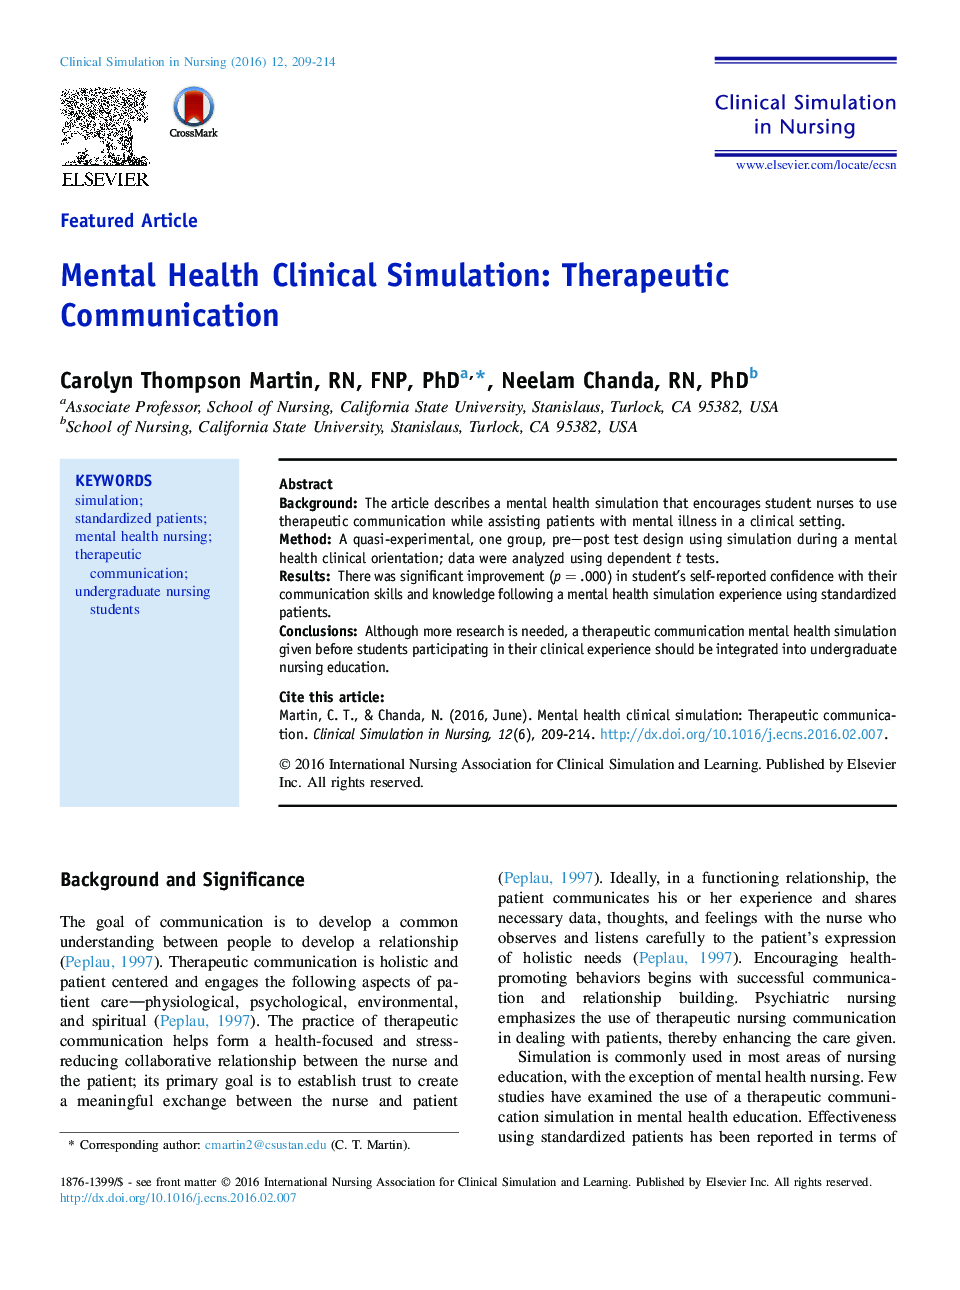 شبیه سازی بالینی بهداشت روان: ارتباطات درمانی